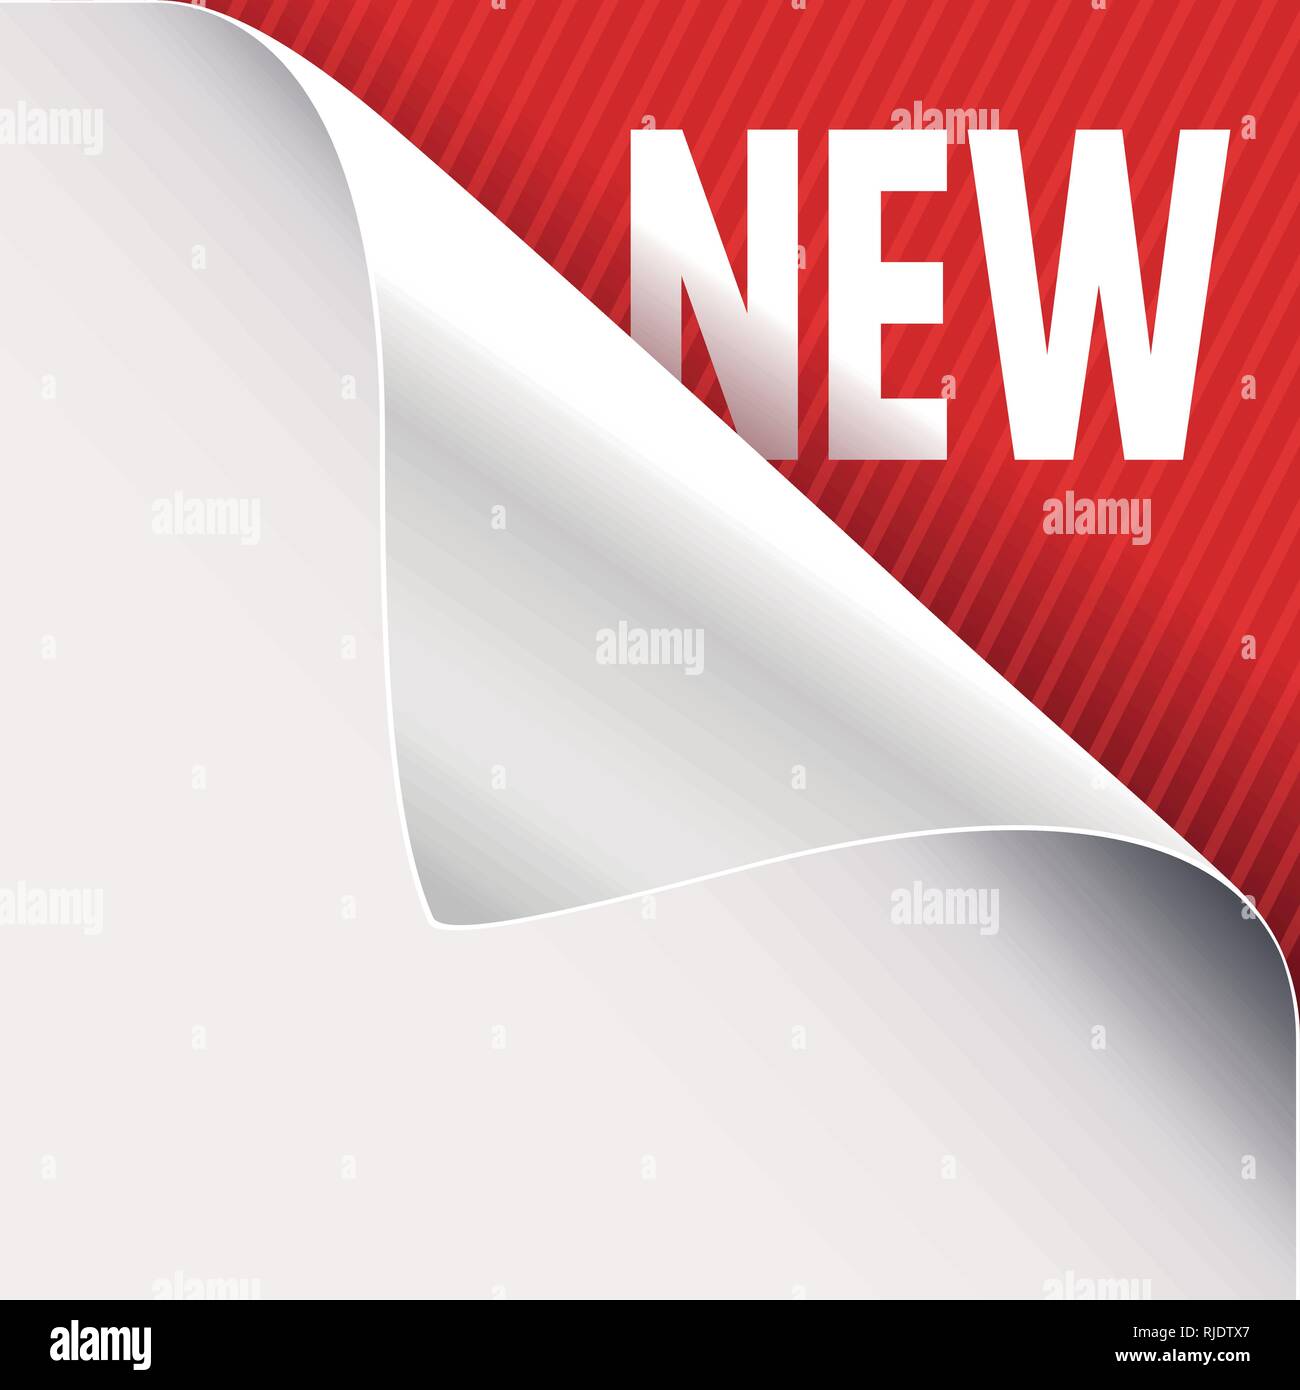 Angolo arricciato del libro bianco su una rossa in alto a destra sullo sfondo di angolo. Il nuovo slogan di segno. Illustrazione Vettoriale. Illustrazione Vettoriale